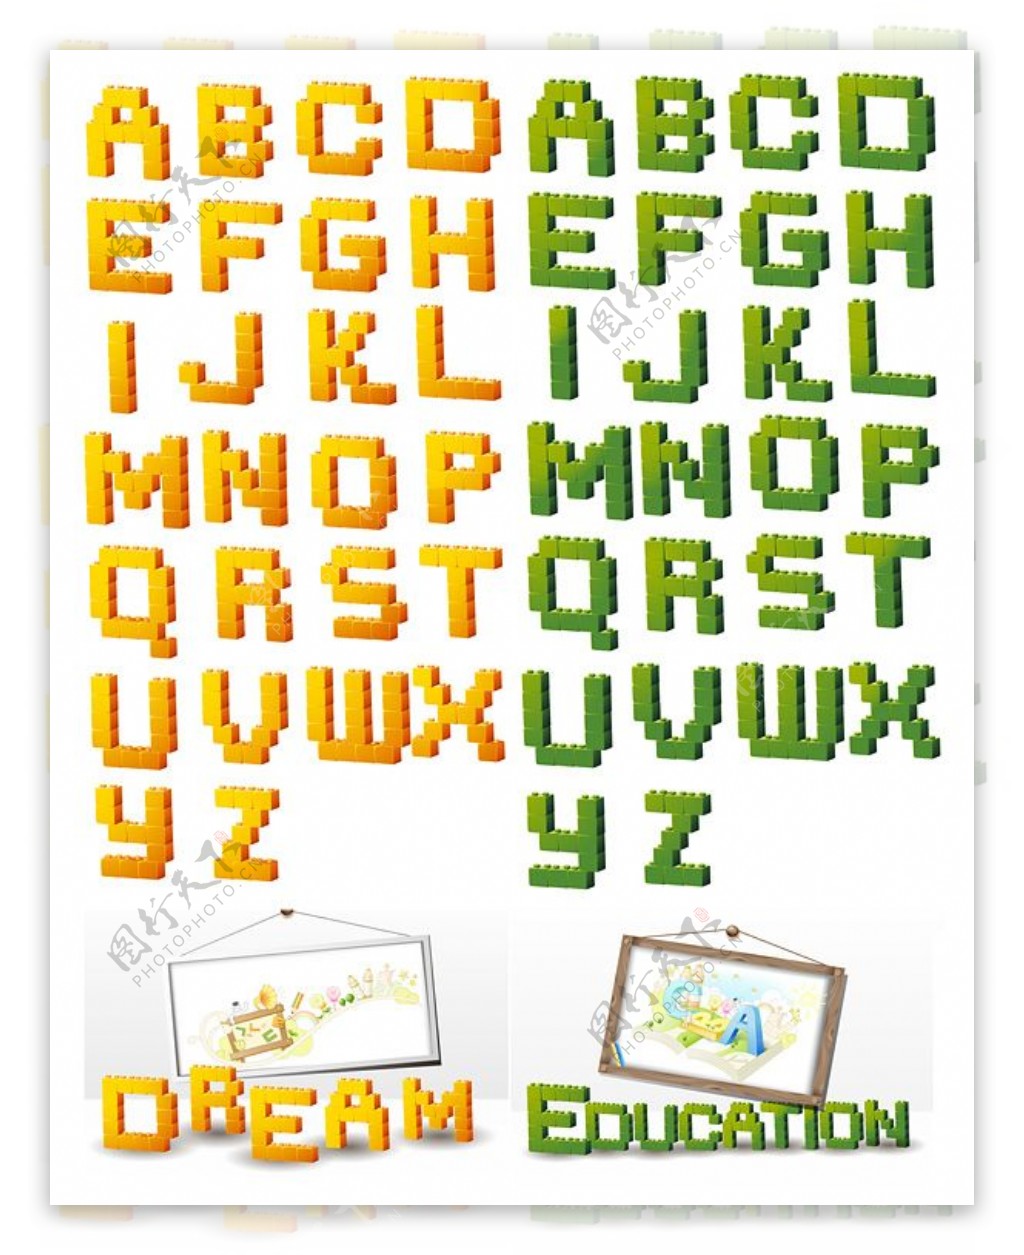 立体积木型英文字母